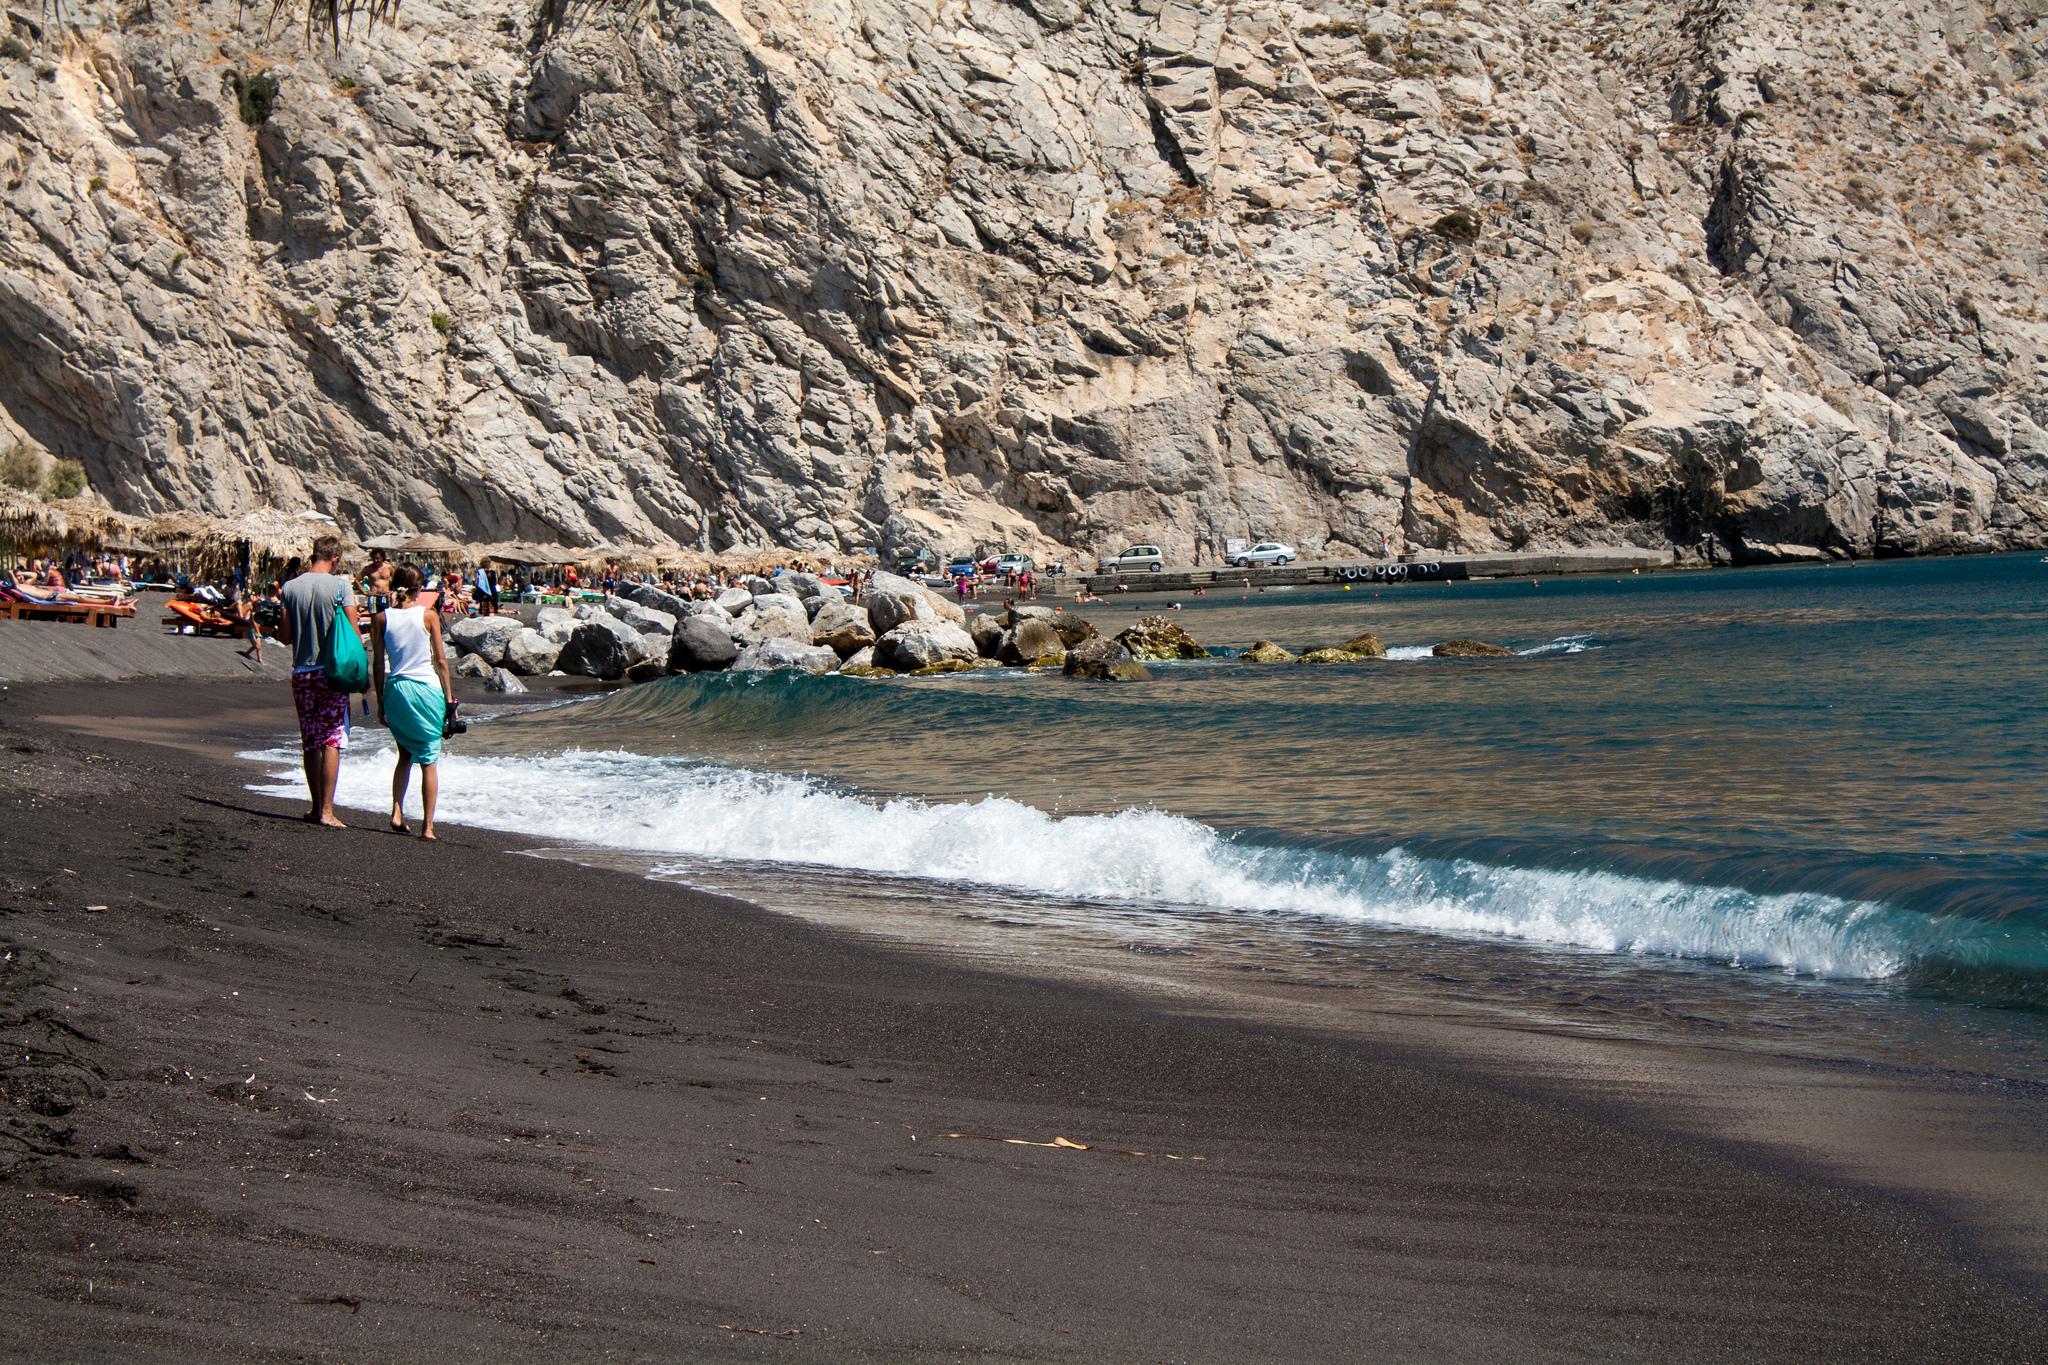 Еще один пляж, который рекомендую для посещения – Перисса. На нем так же черный песок и организованный сервис развлечений.